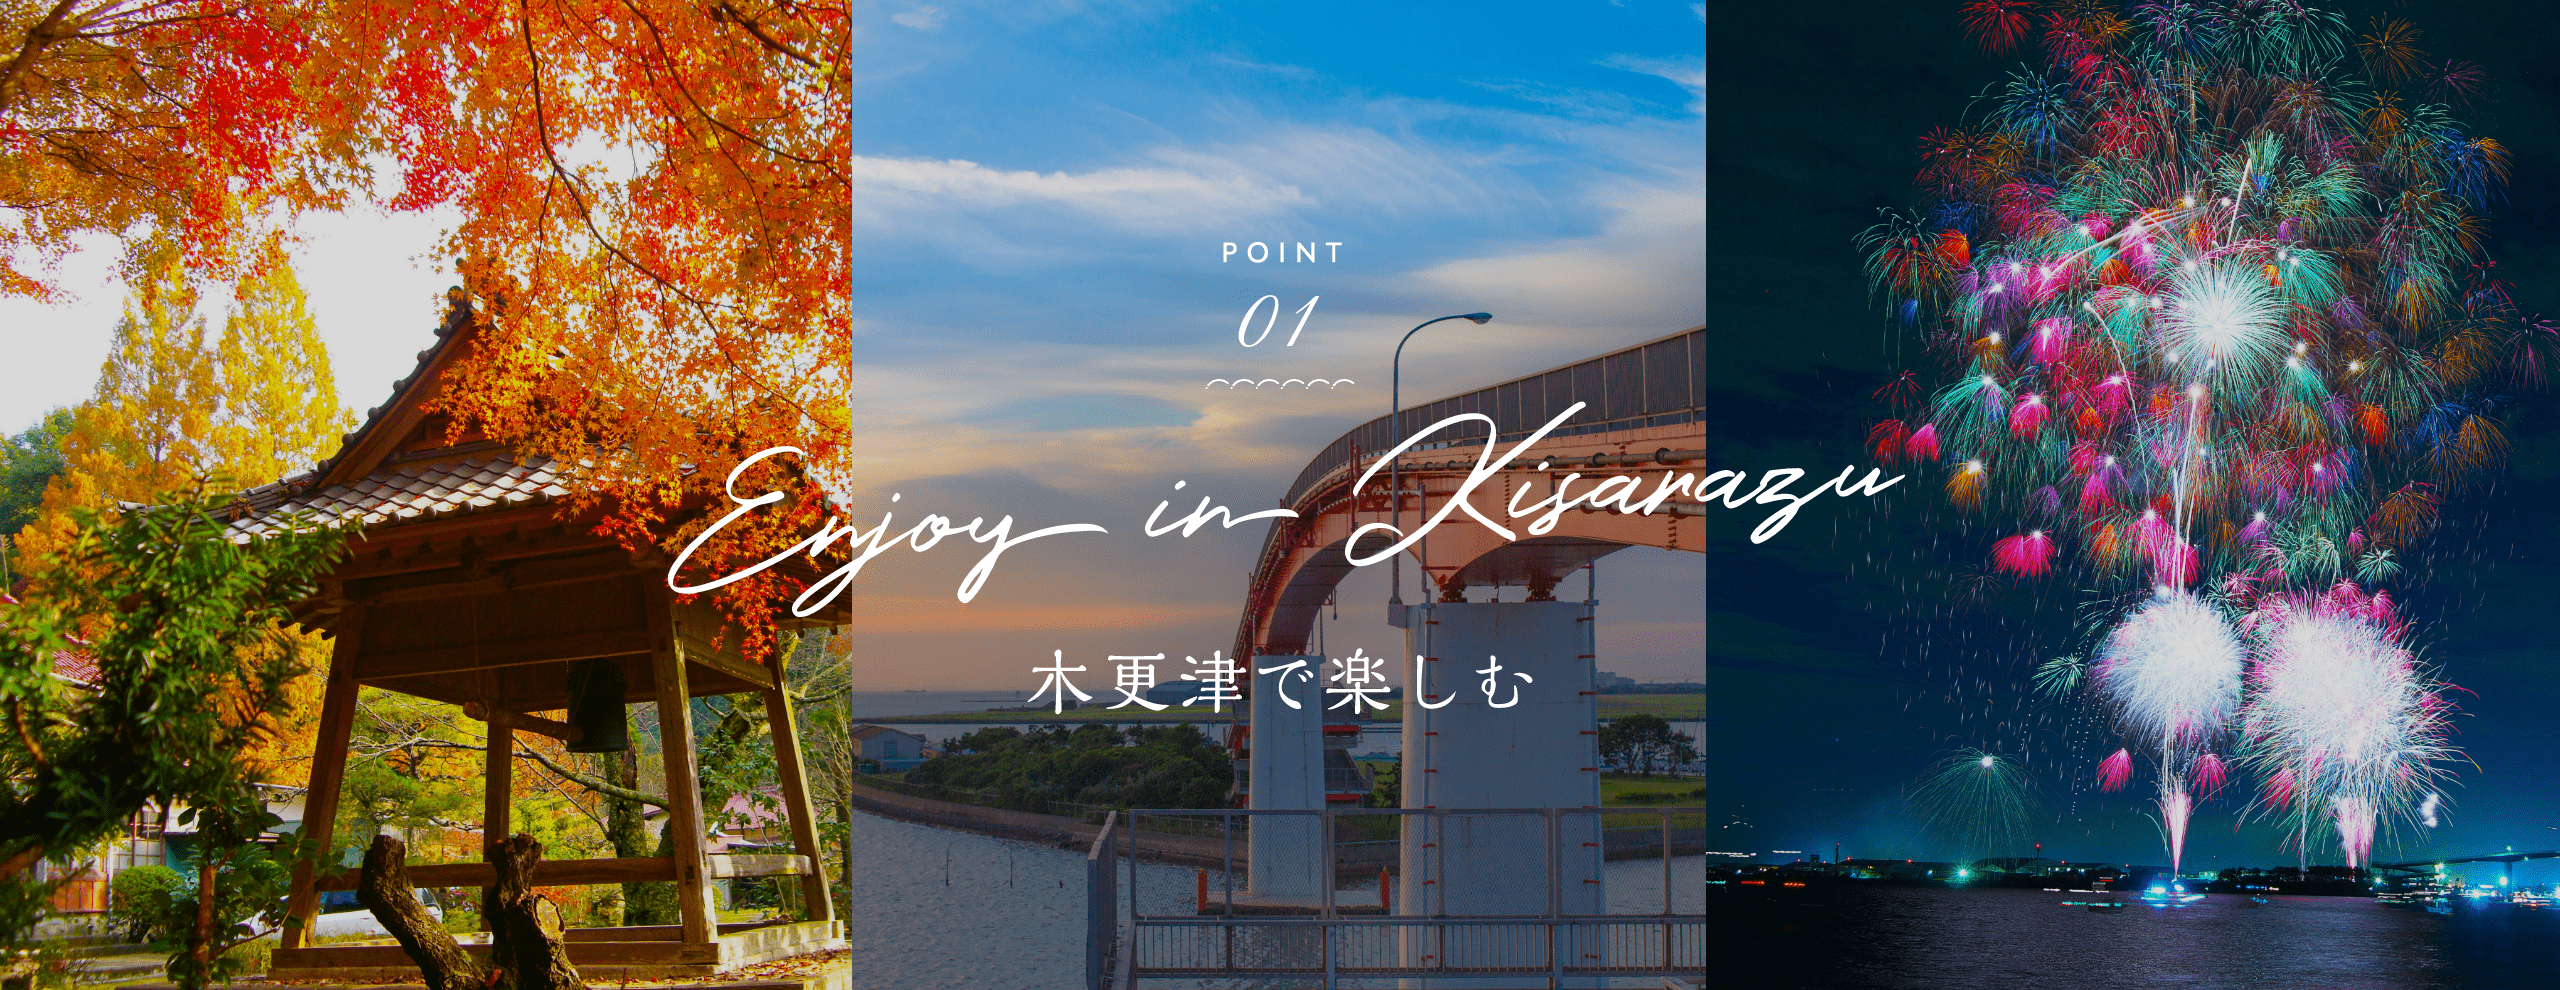 POINT 01 ENjoy in Kisarazu 木更津市で楽しむ